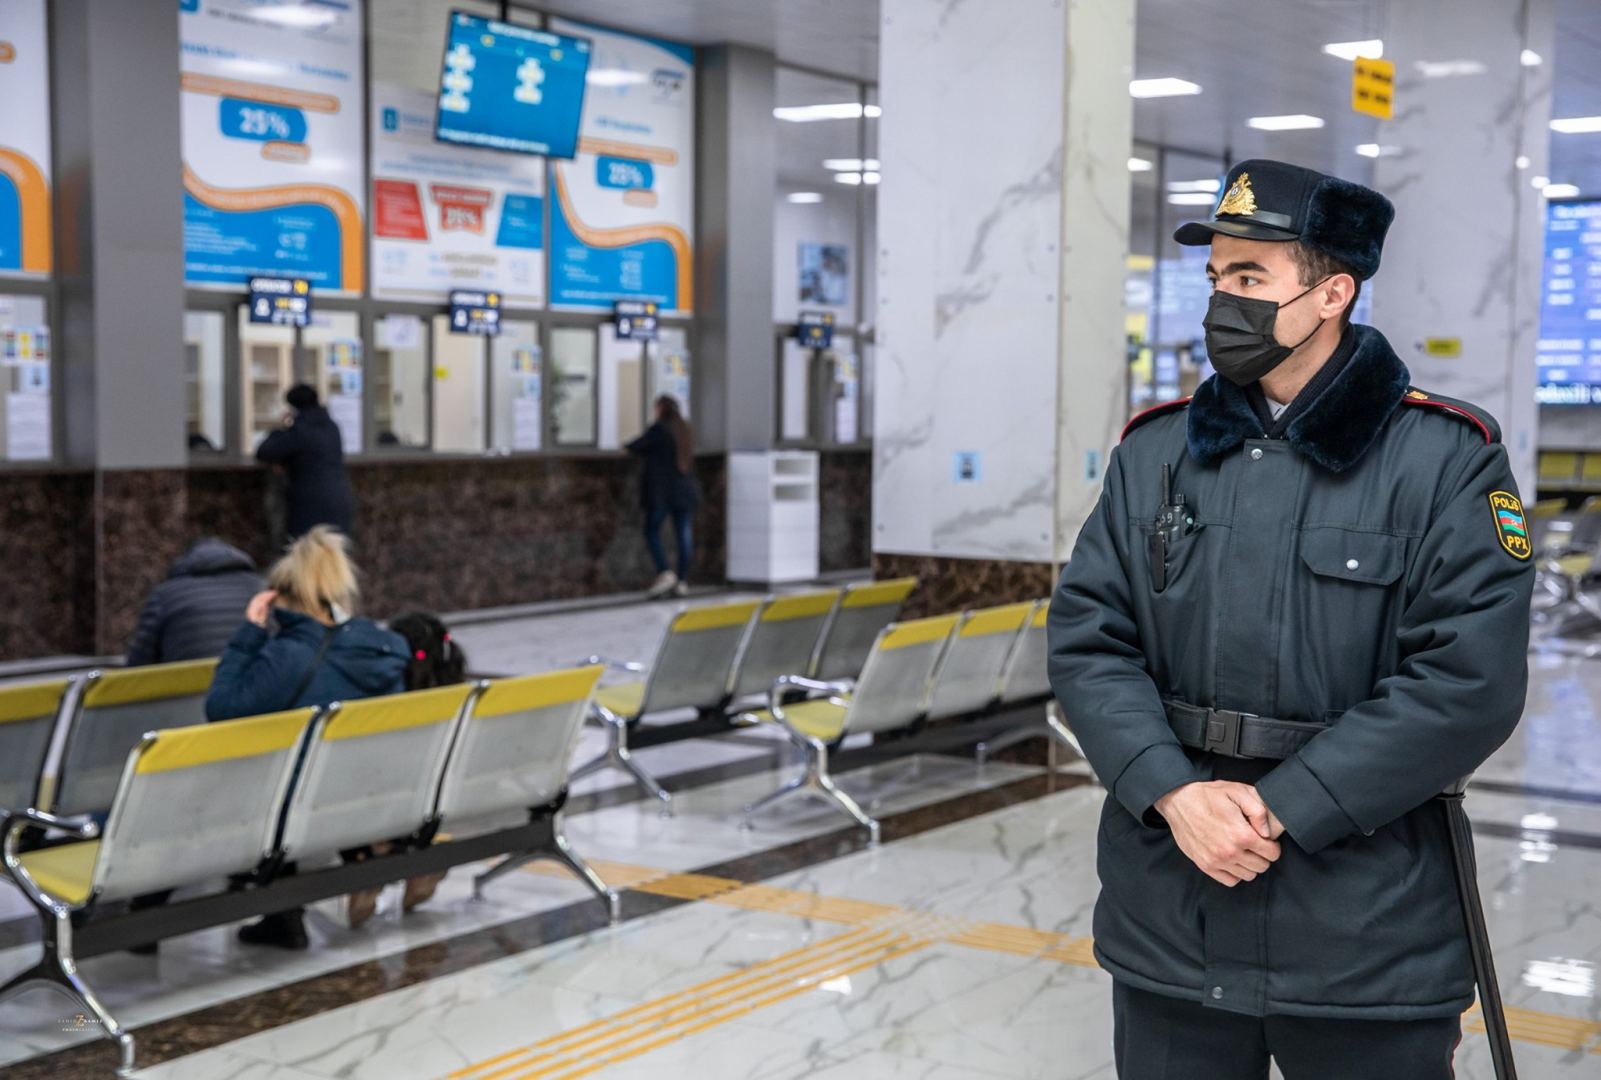 ЗАО «Азербайджанские железные дороги» возвращает деньги за приобретенные билеты (ФОТО) - Gallery Image